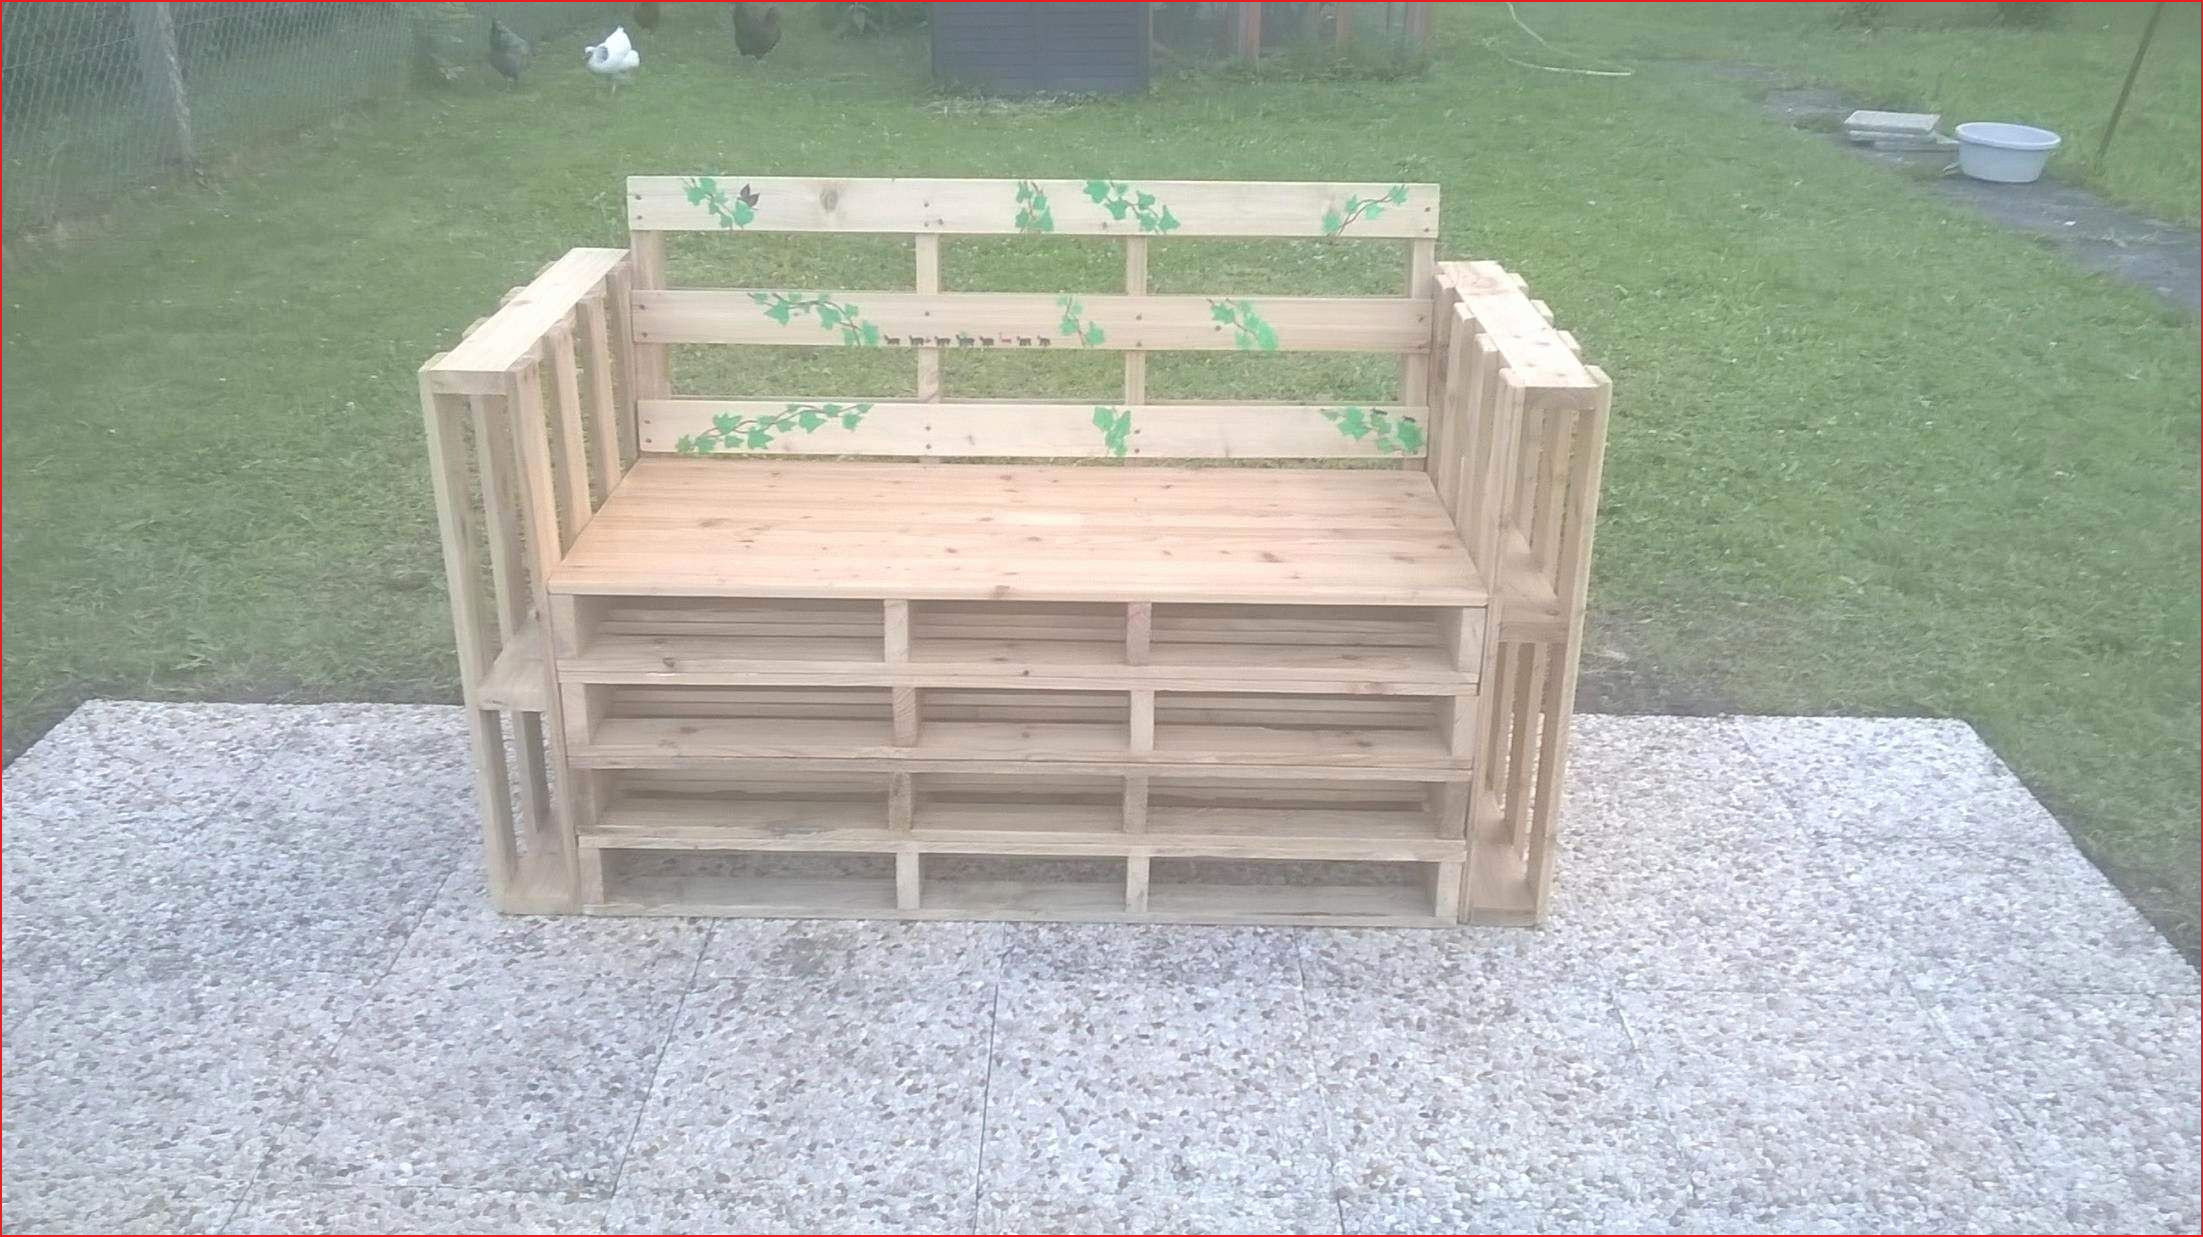 Table Ronde De Jardin Charmant Innovante Banc Pour Jardin Image De Jardin Décoratif